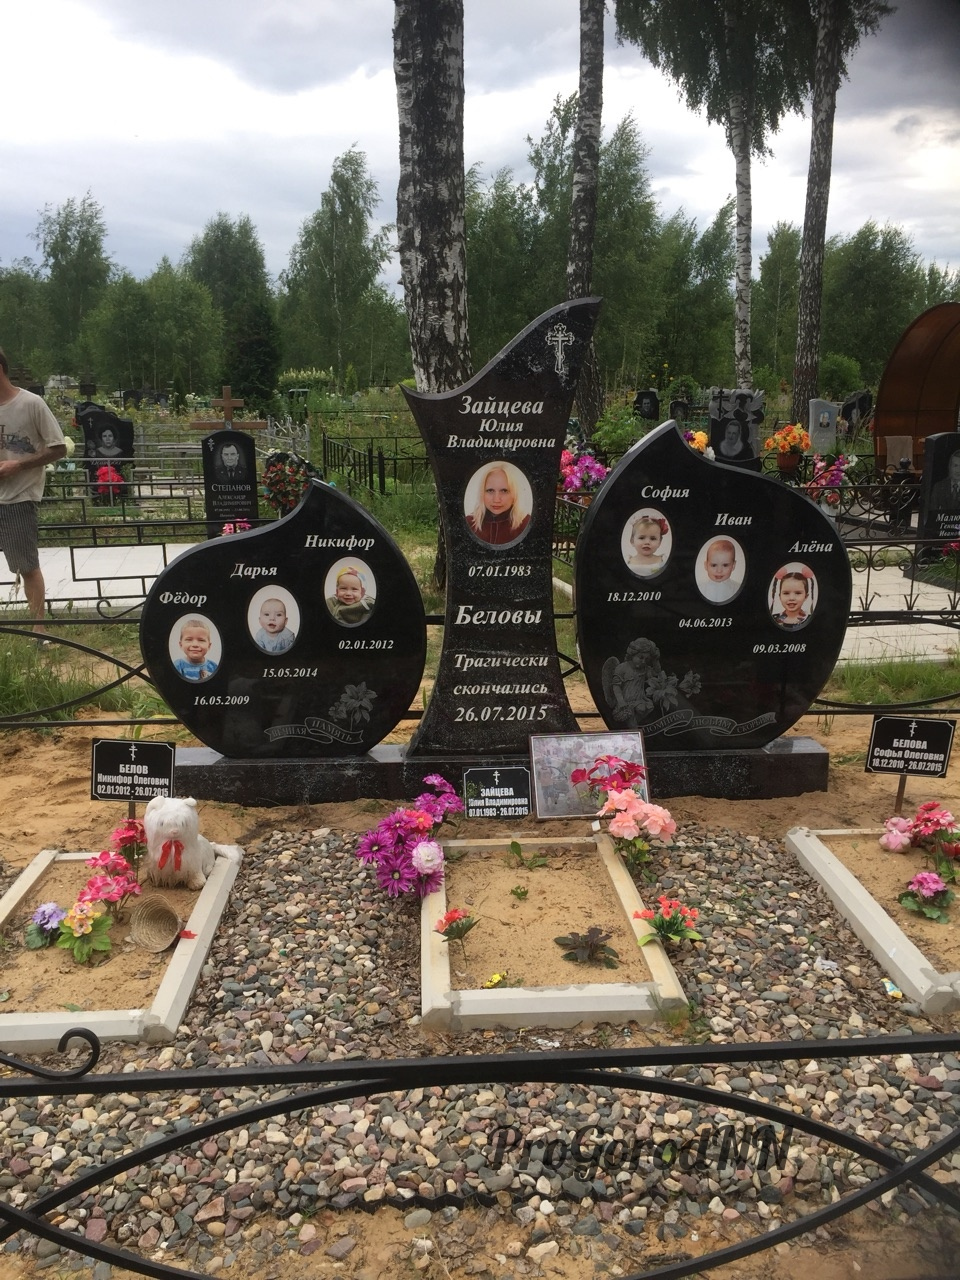 памятник на могиле Юлии Зайцевой и ее шестерых детей, убитых Олегом Беловым летом 2015 года